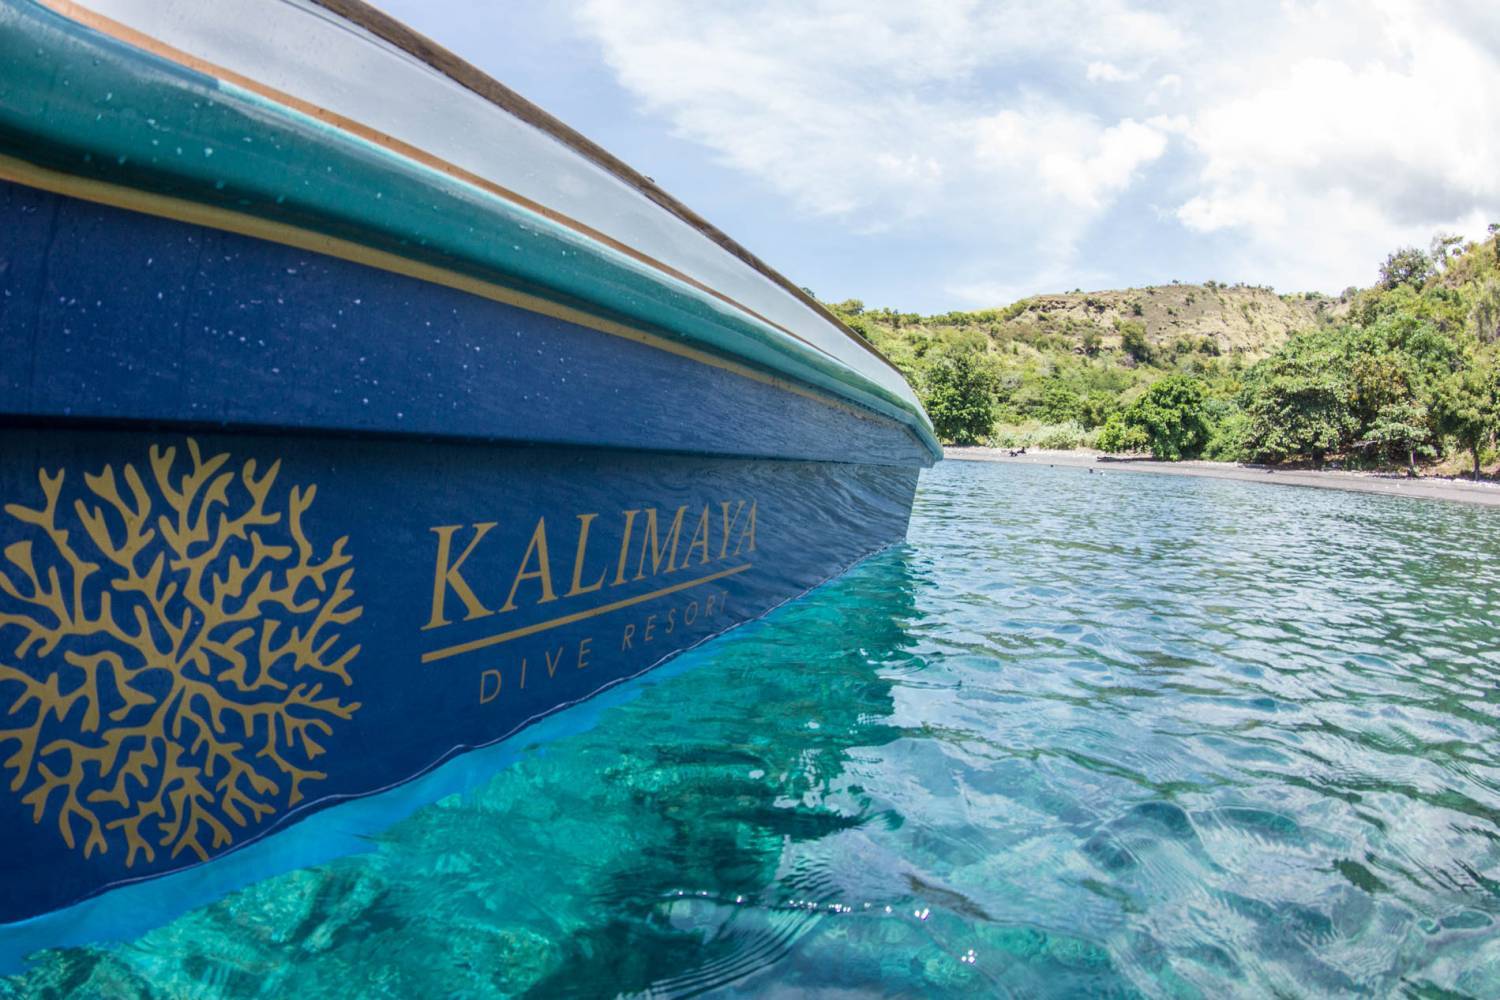 【印尼】Kalimaya Dive Resort  6日5夜潛水自由行套票